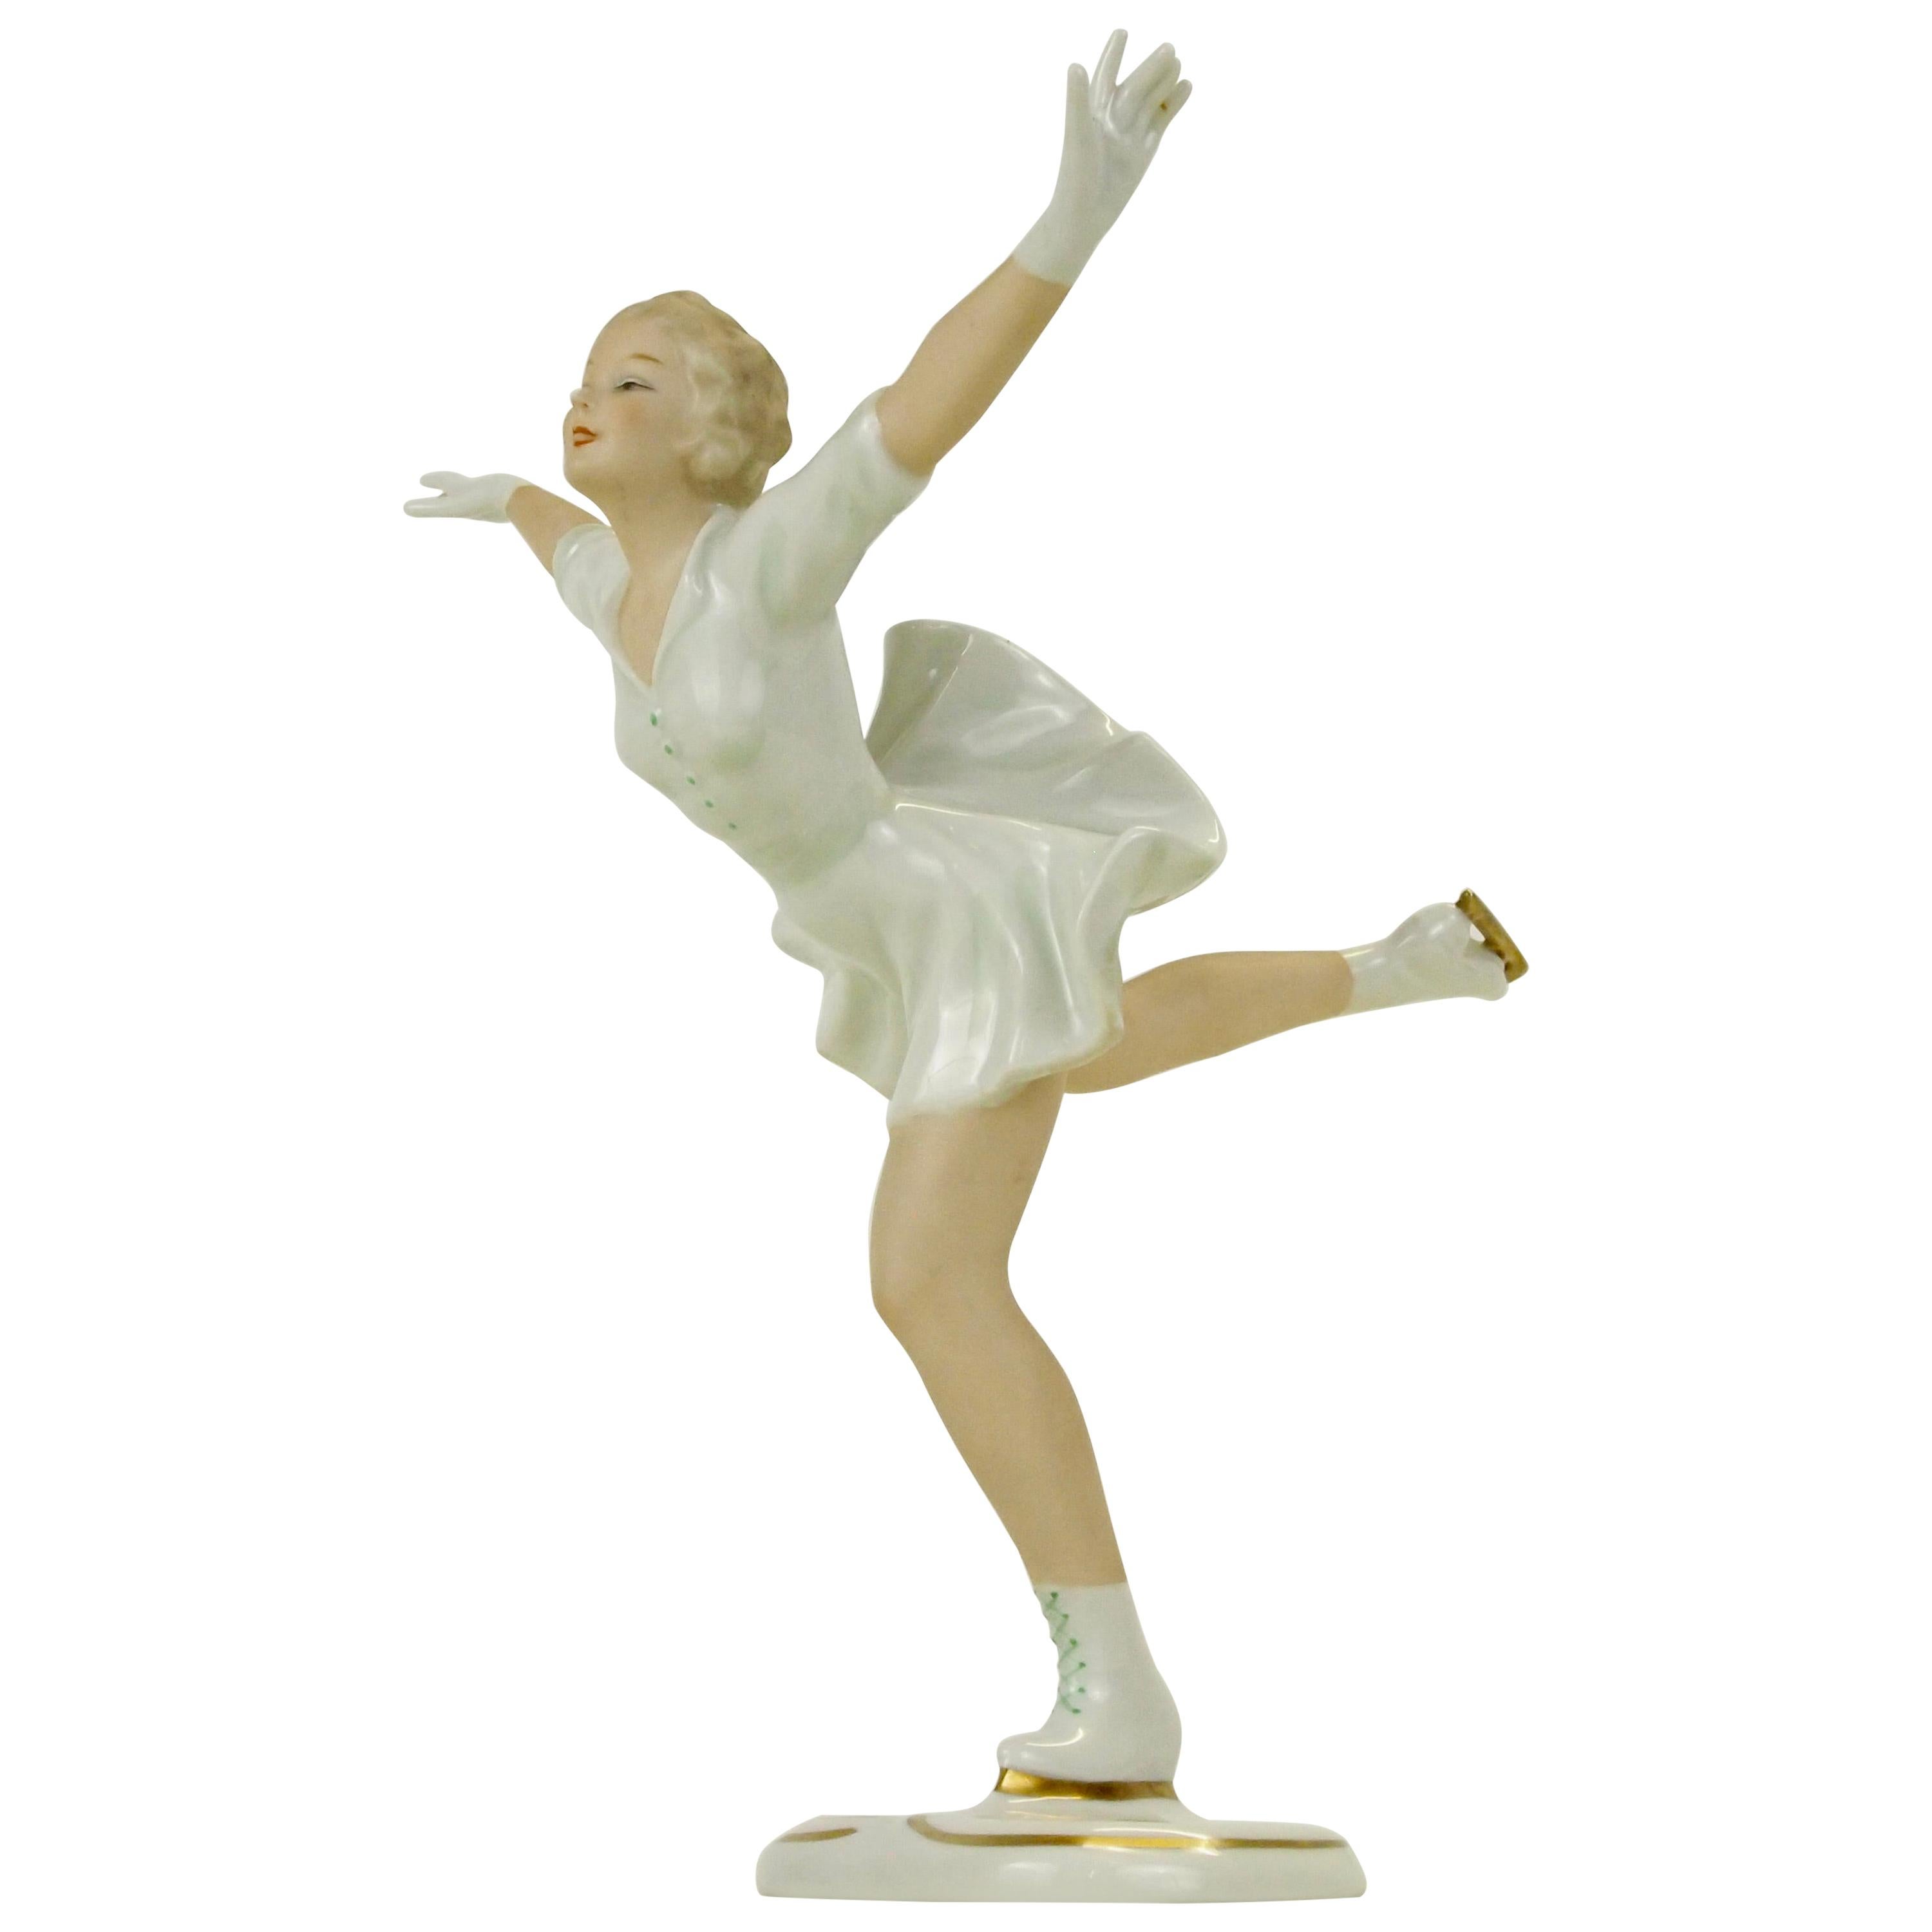 Figure Skating - 8 For Sale on 1stDibs | ice skating figurines 